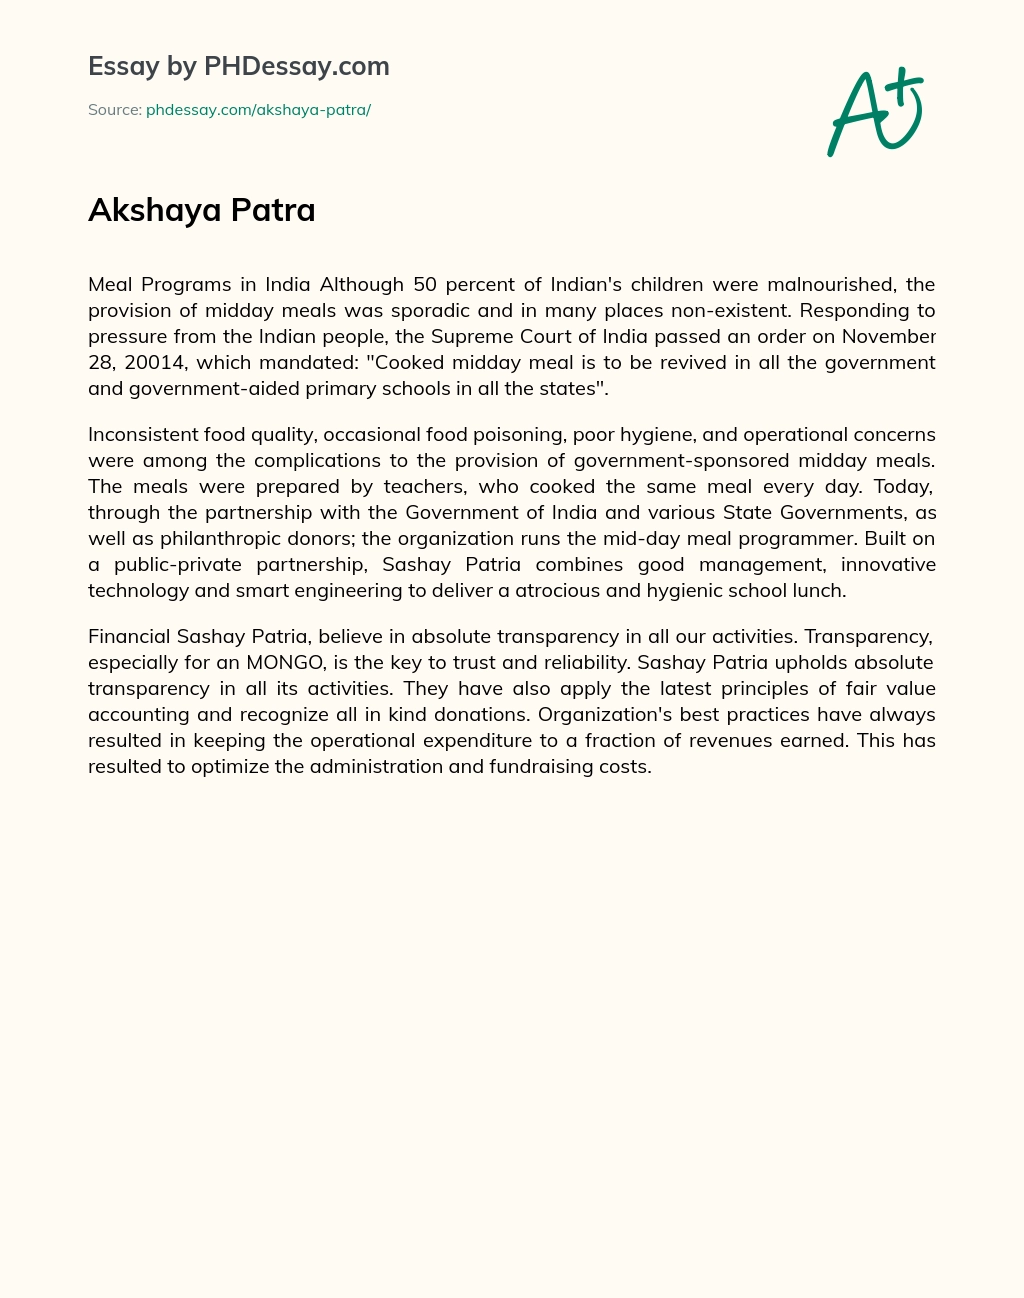 Akshaya Patra essay